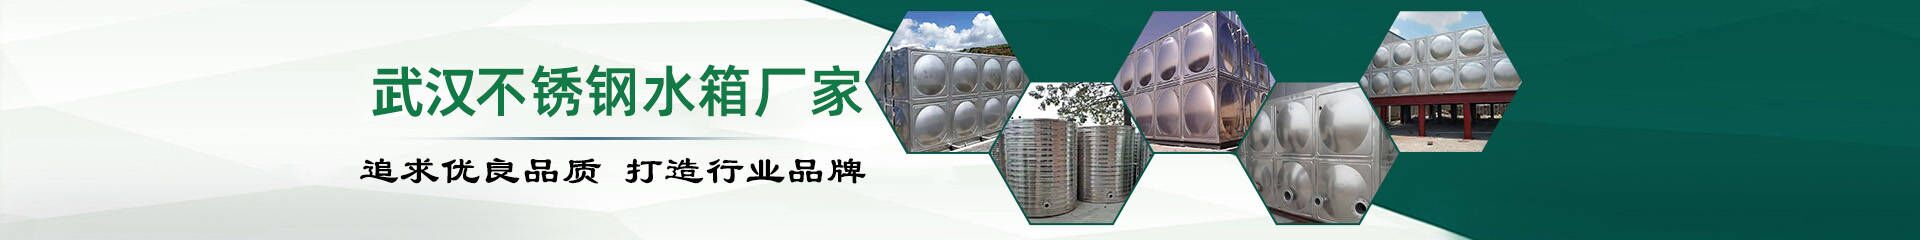 香港上市公司达利食品_合作伙伴_武汉不锈钢水箱厂家联系方式